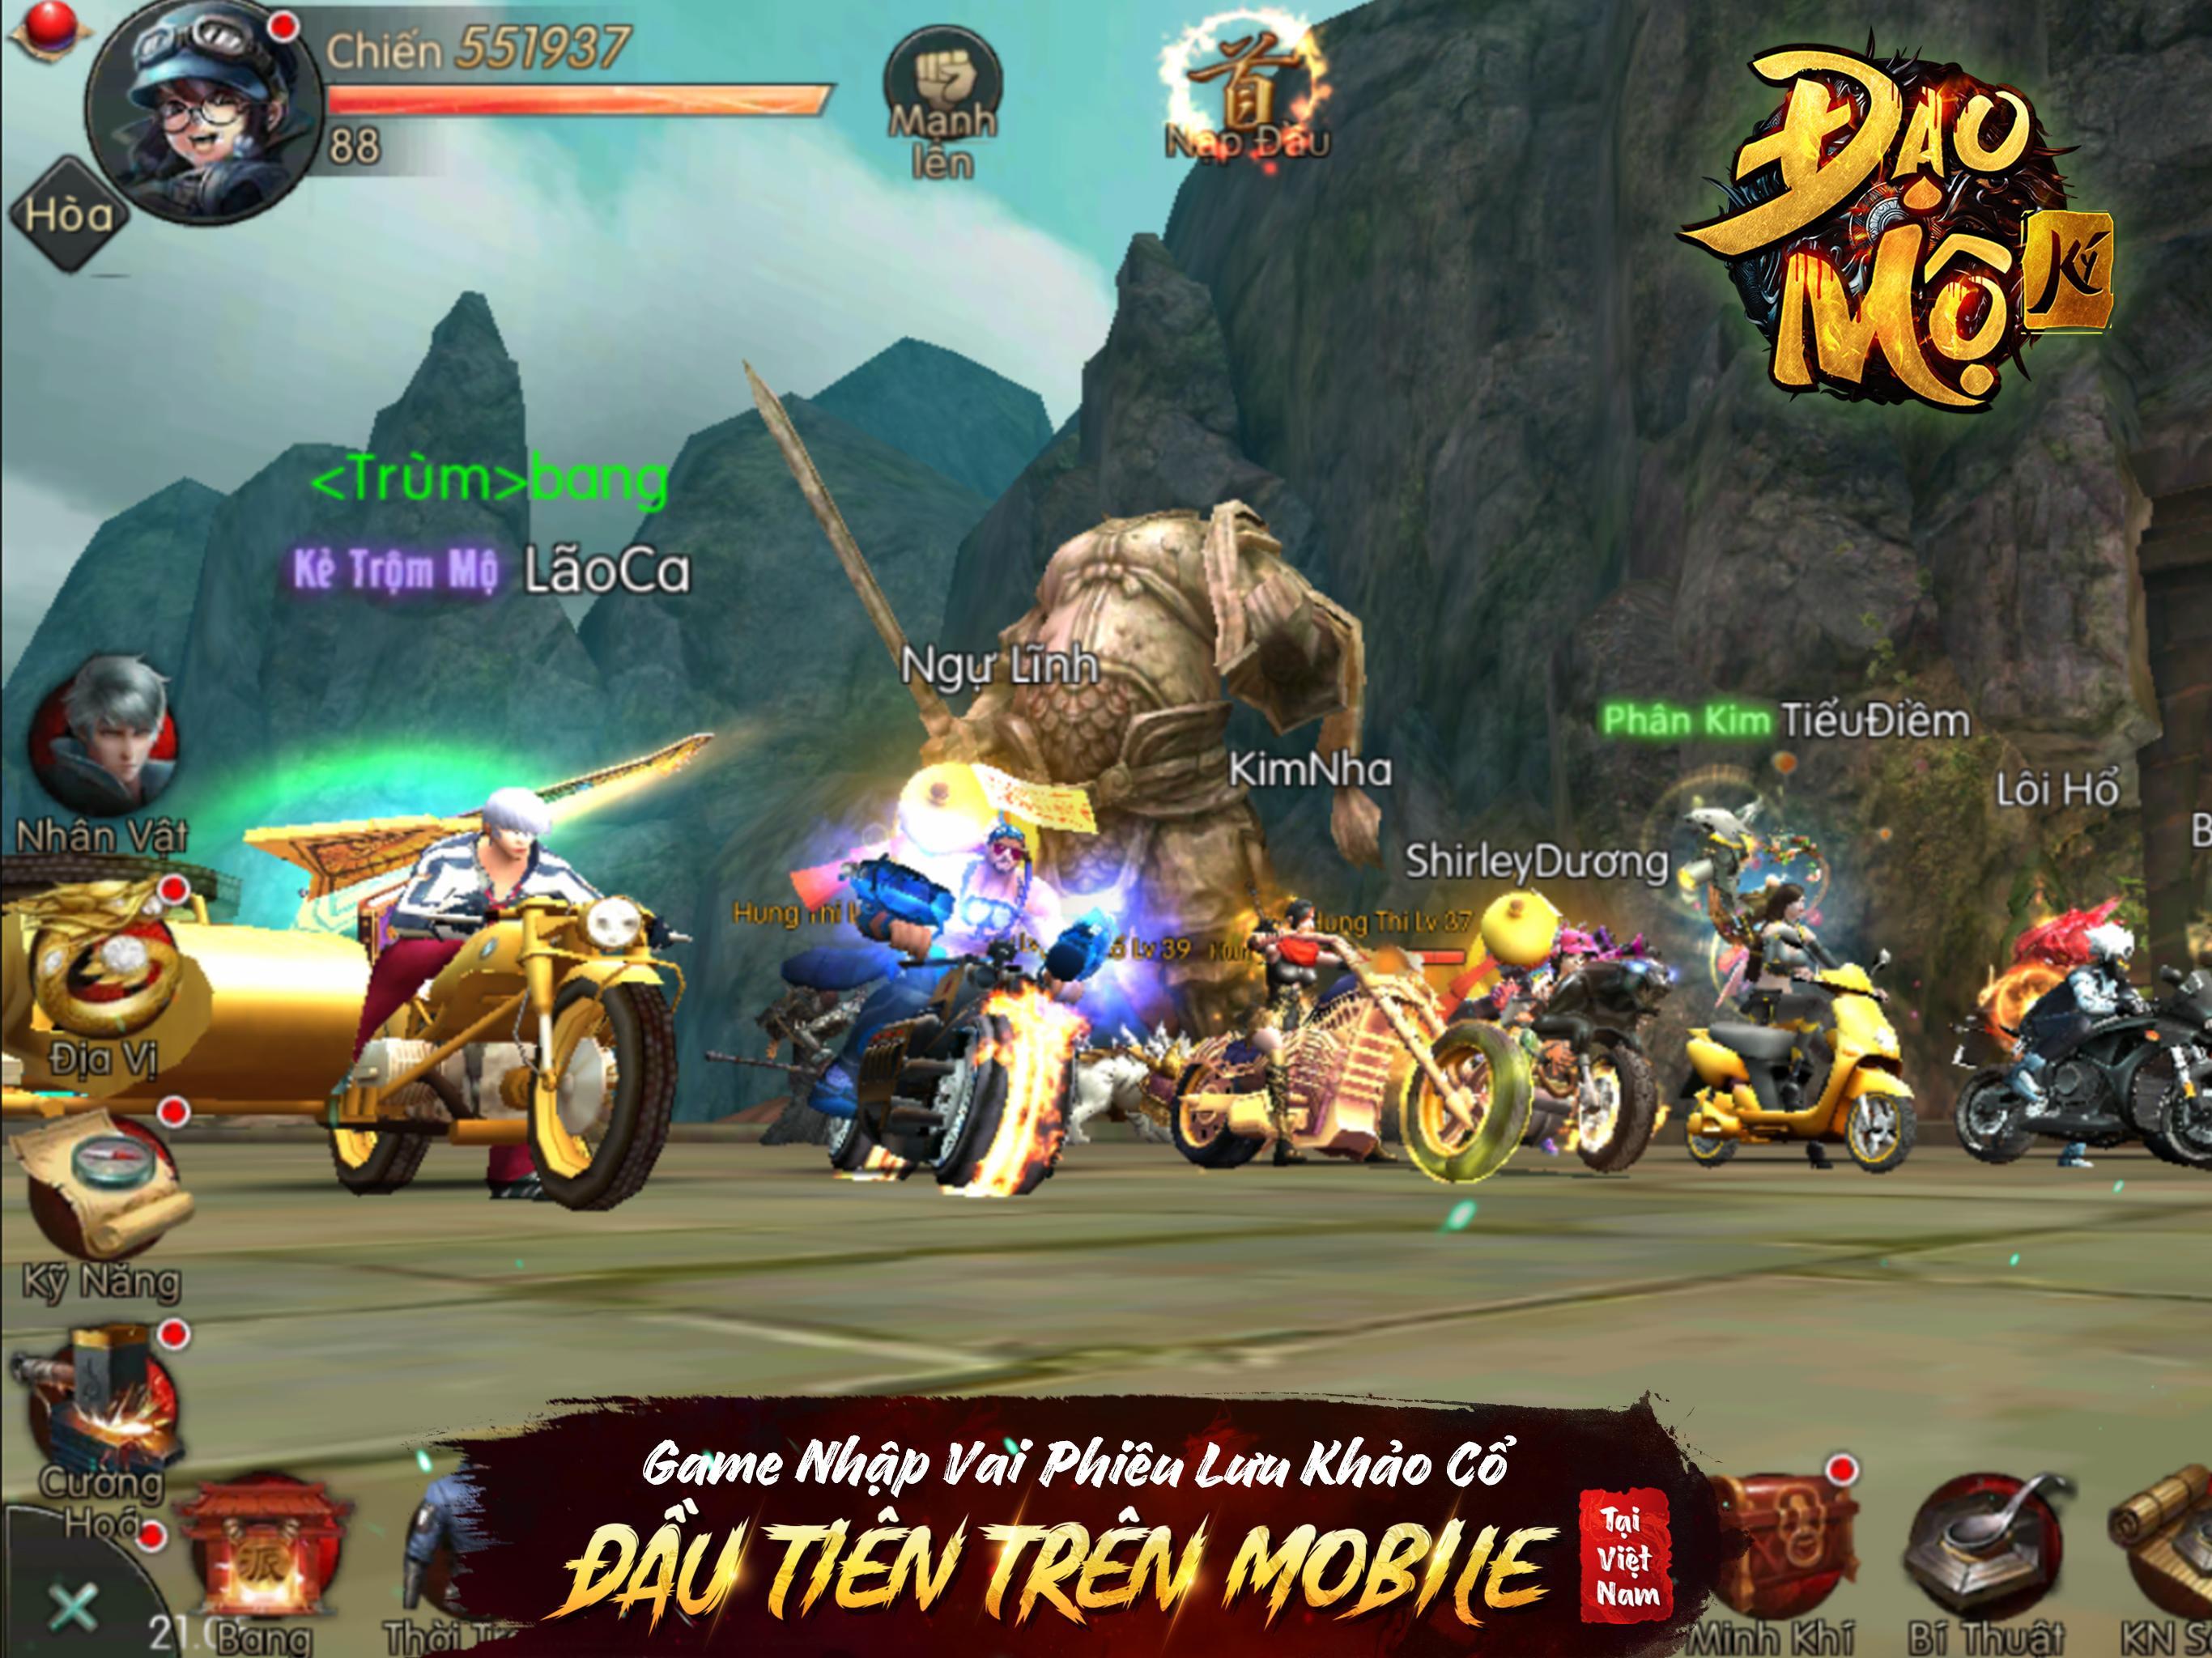 Screenshot 1 of Дао Мо Ки - Дао Мо Ки 